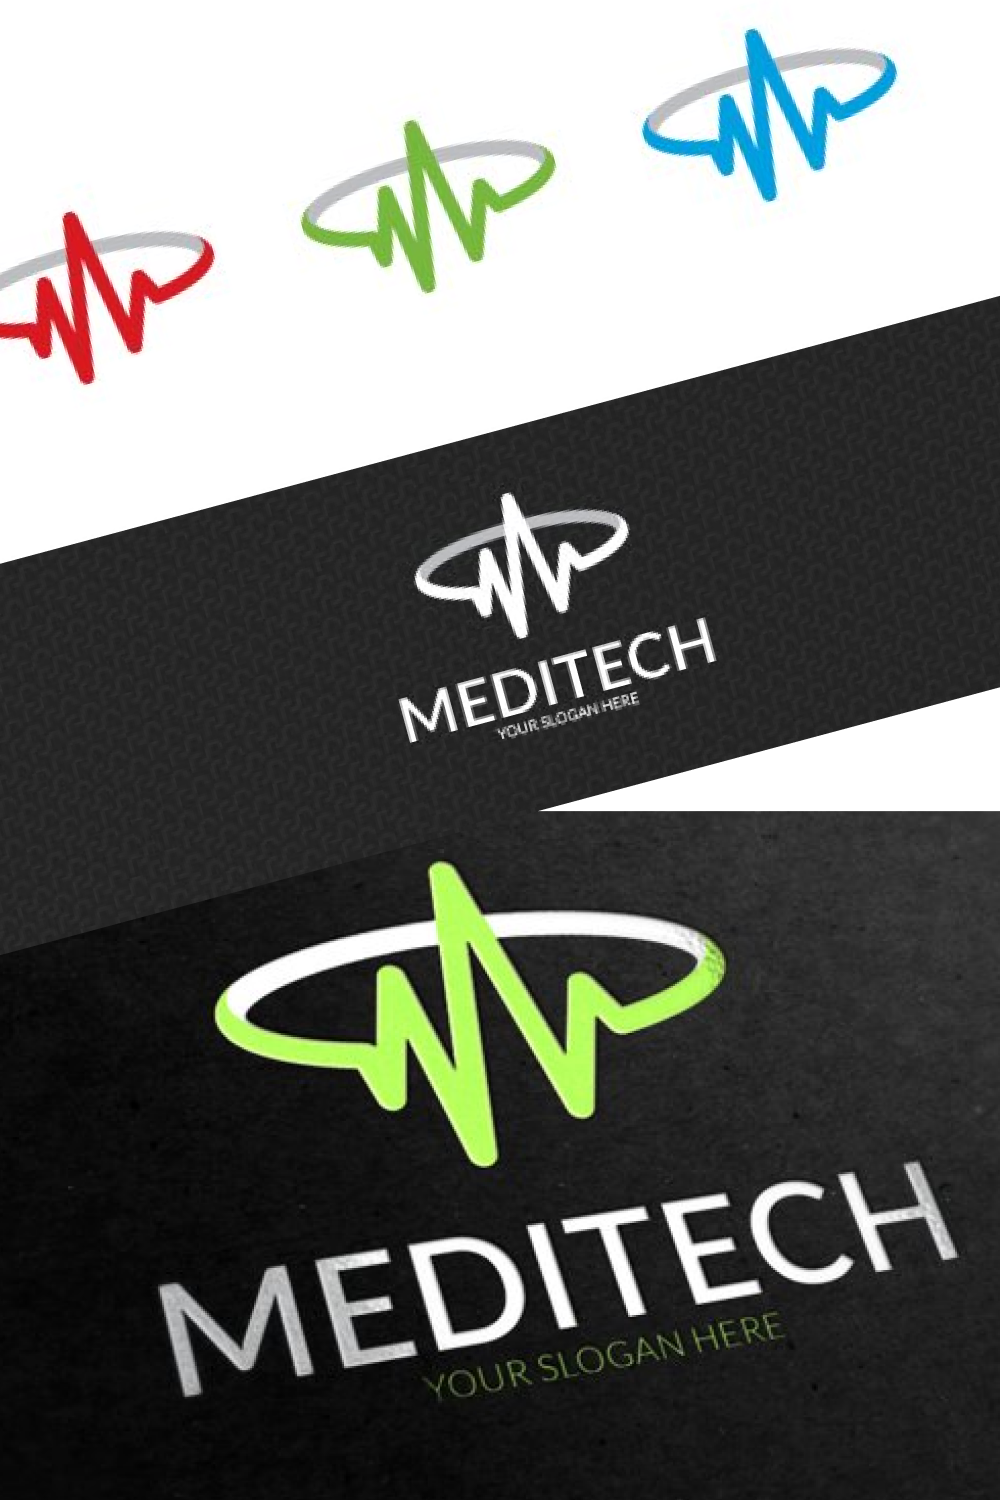 Medical tech logo.